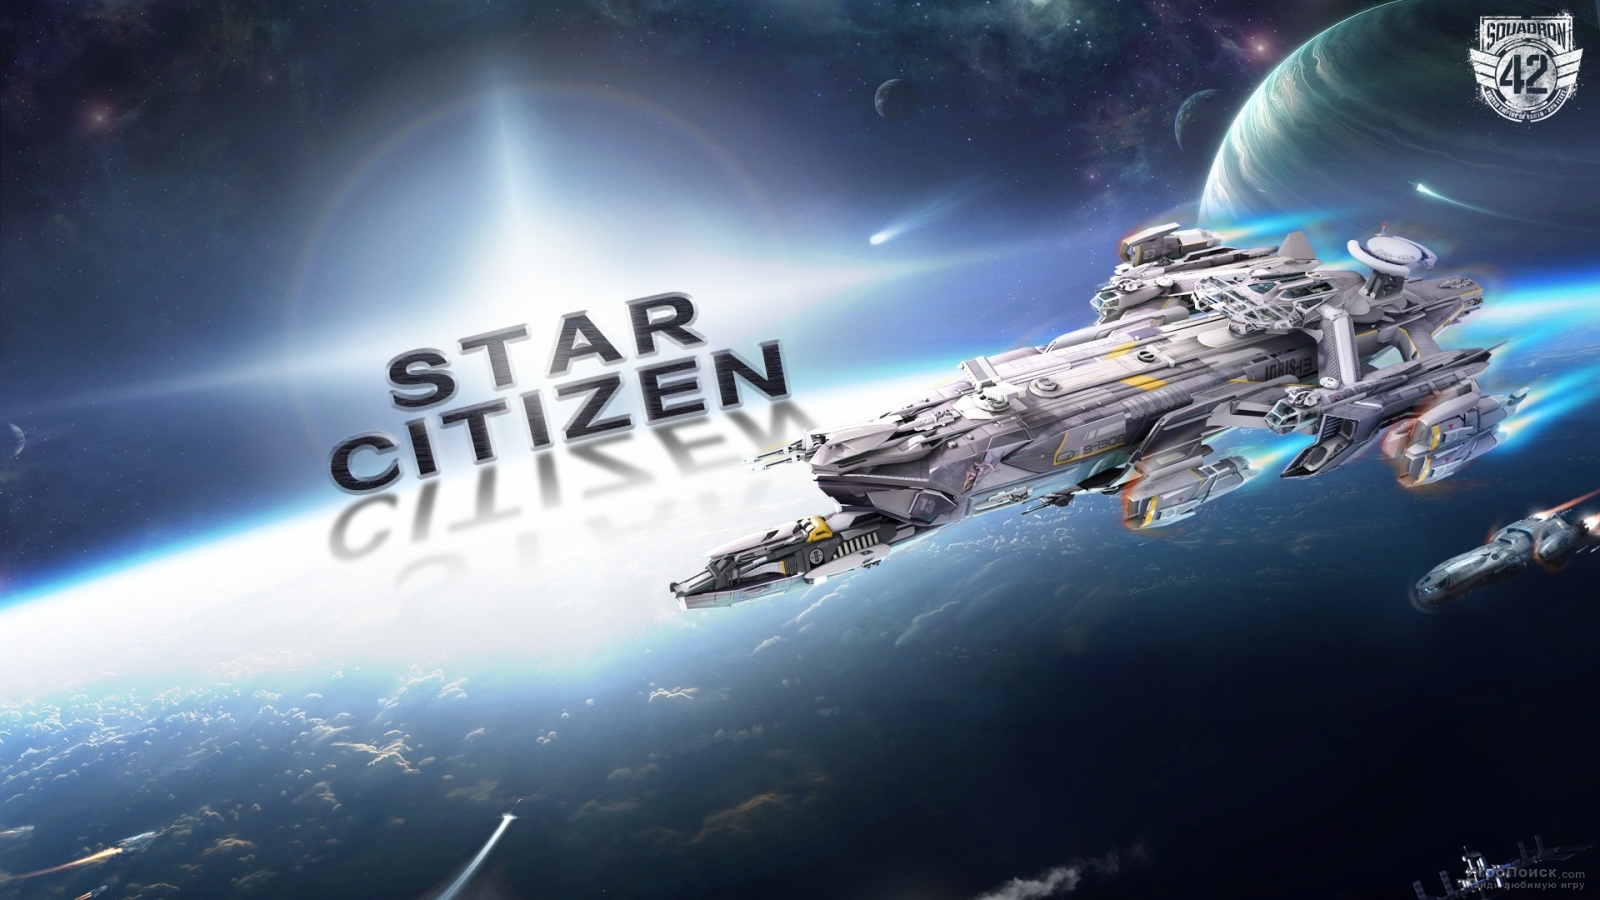   Star Citizen    100   